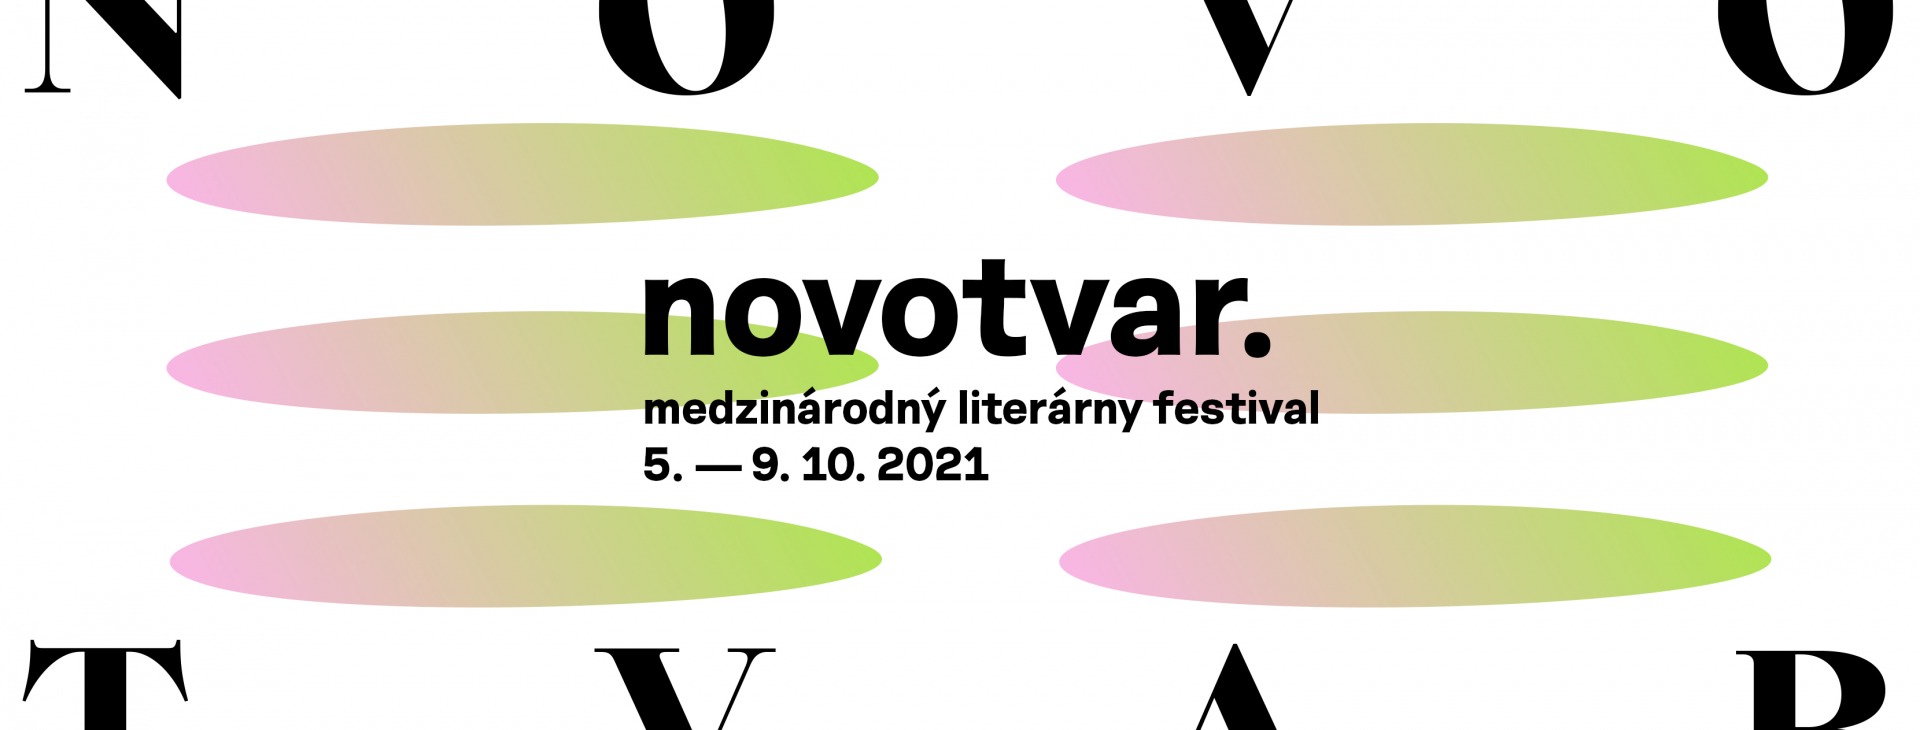 Medzinárodný literárny festival NOVOTVAR